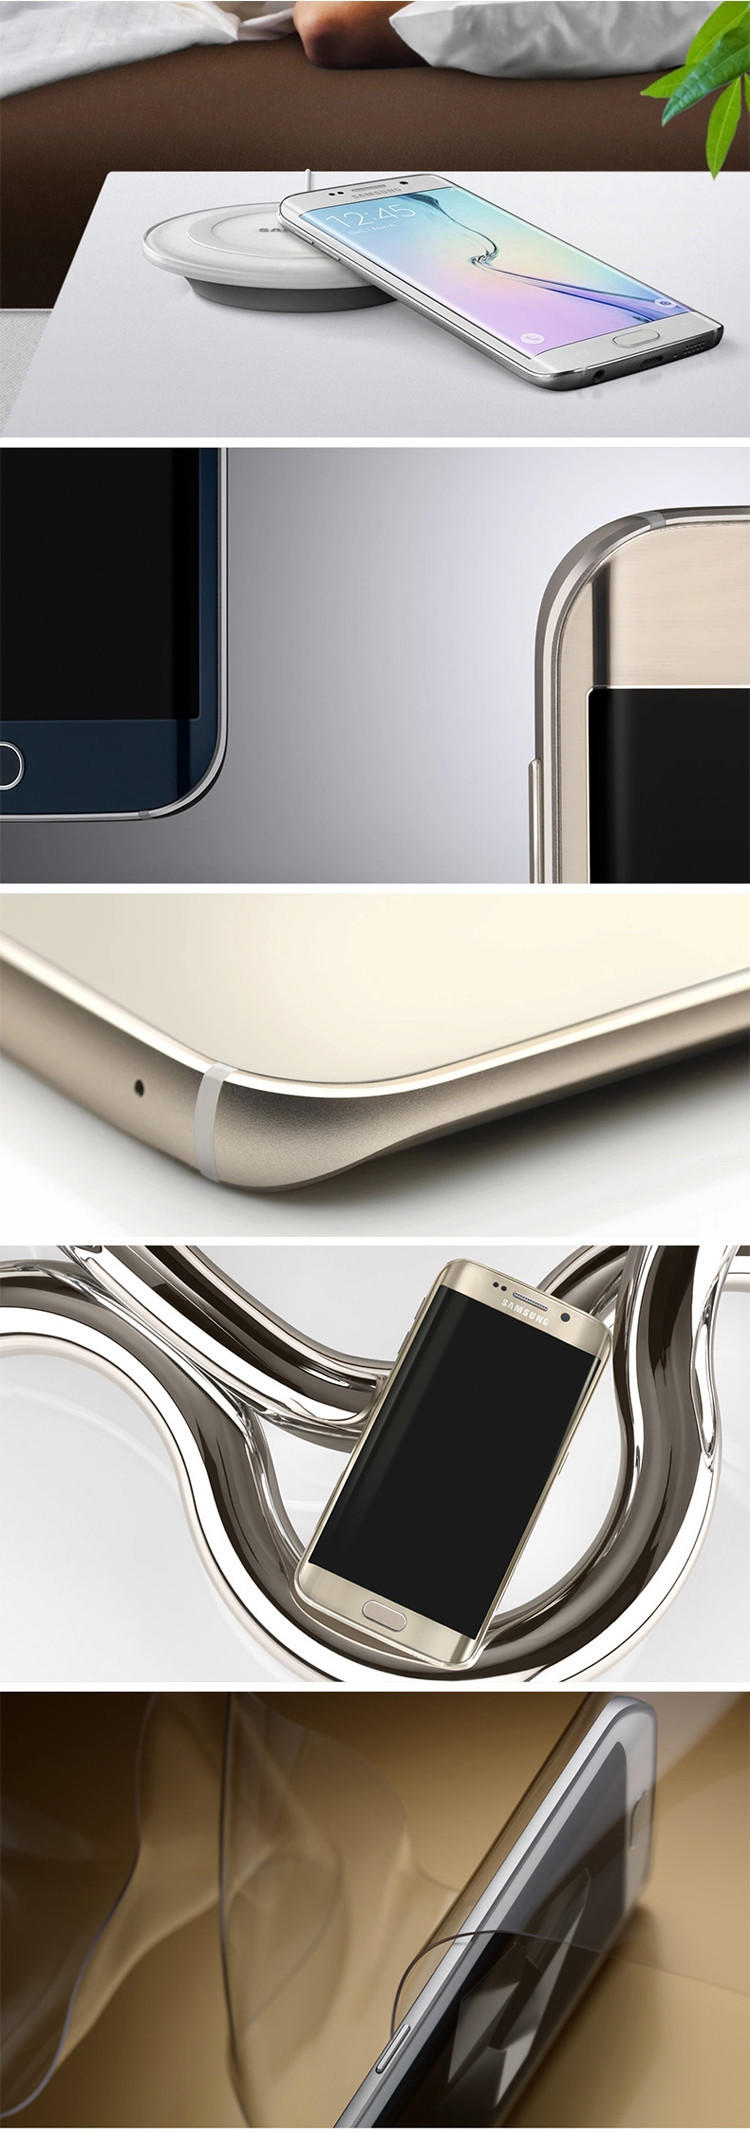 三星 Galaxy S6 edge（G9250）32G版  全网通4G手机 5.1英寸 双曲面